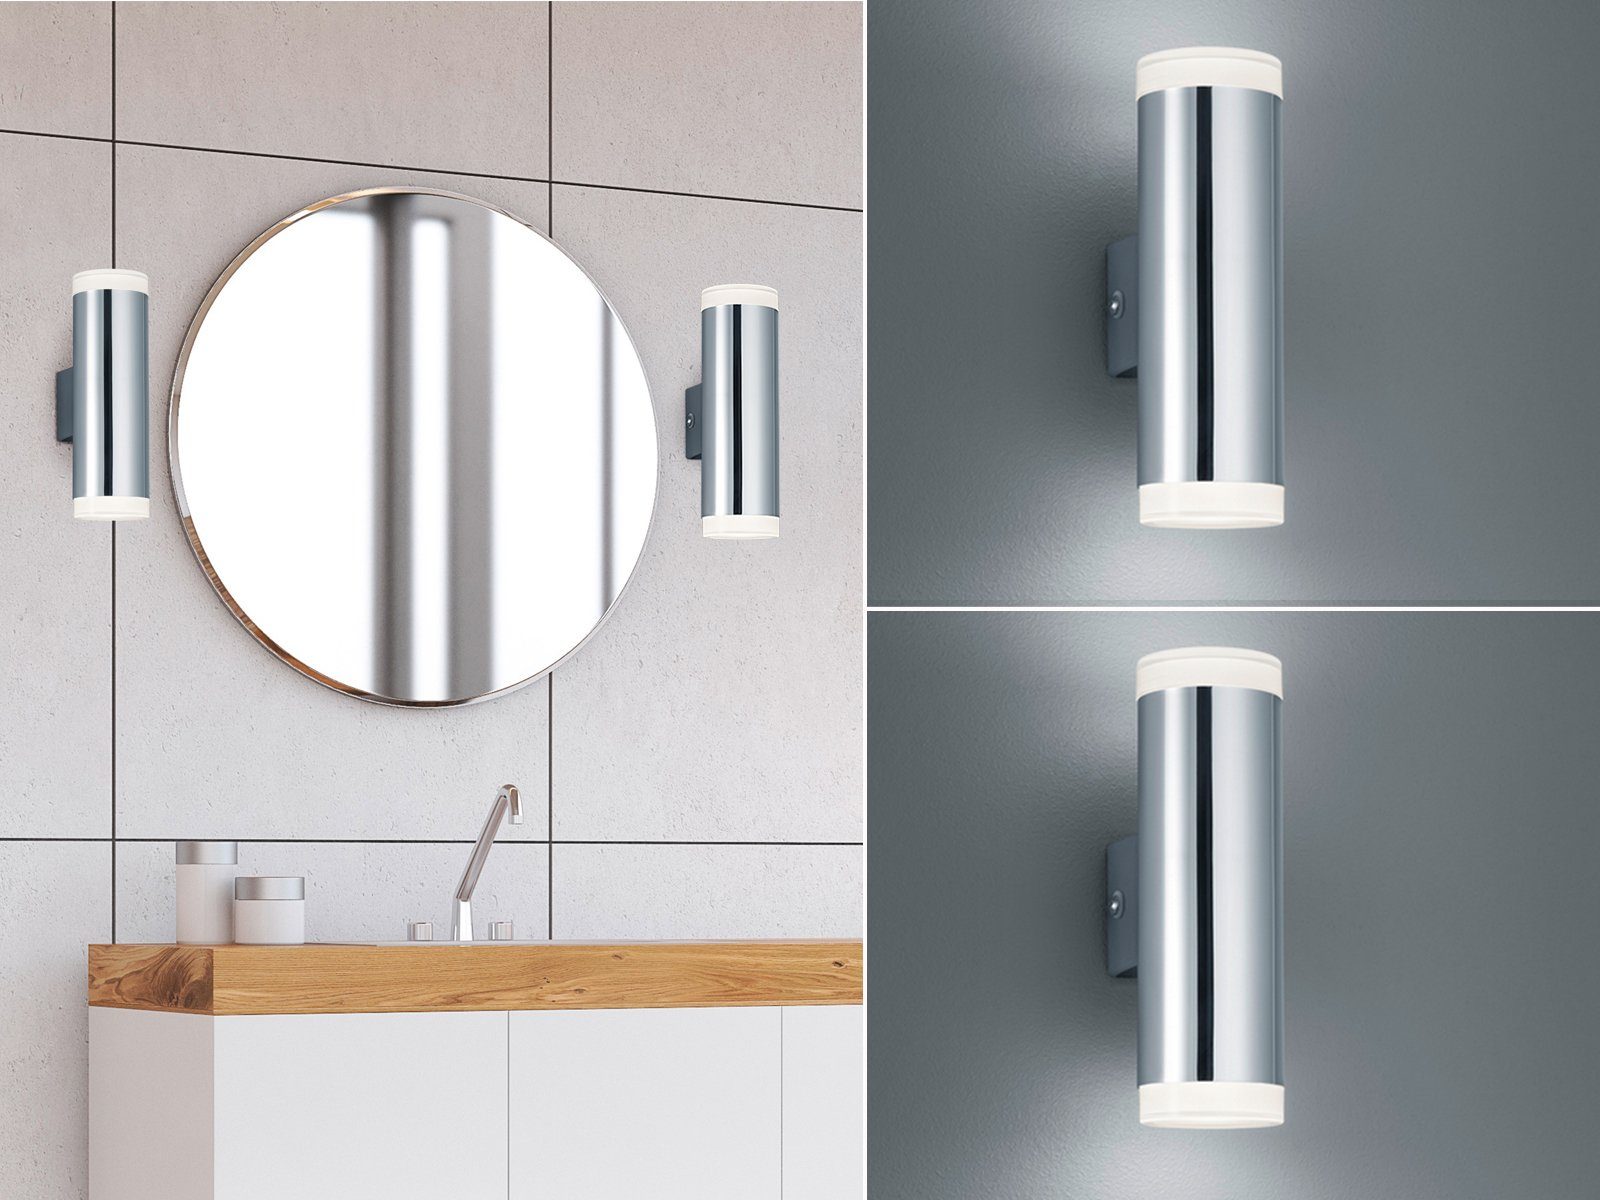 Design LED Spiegel Wand Chrom Leuchte Decken Lampe Glas Strahler Bad Beleuchtung 